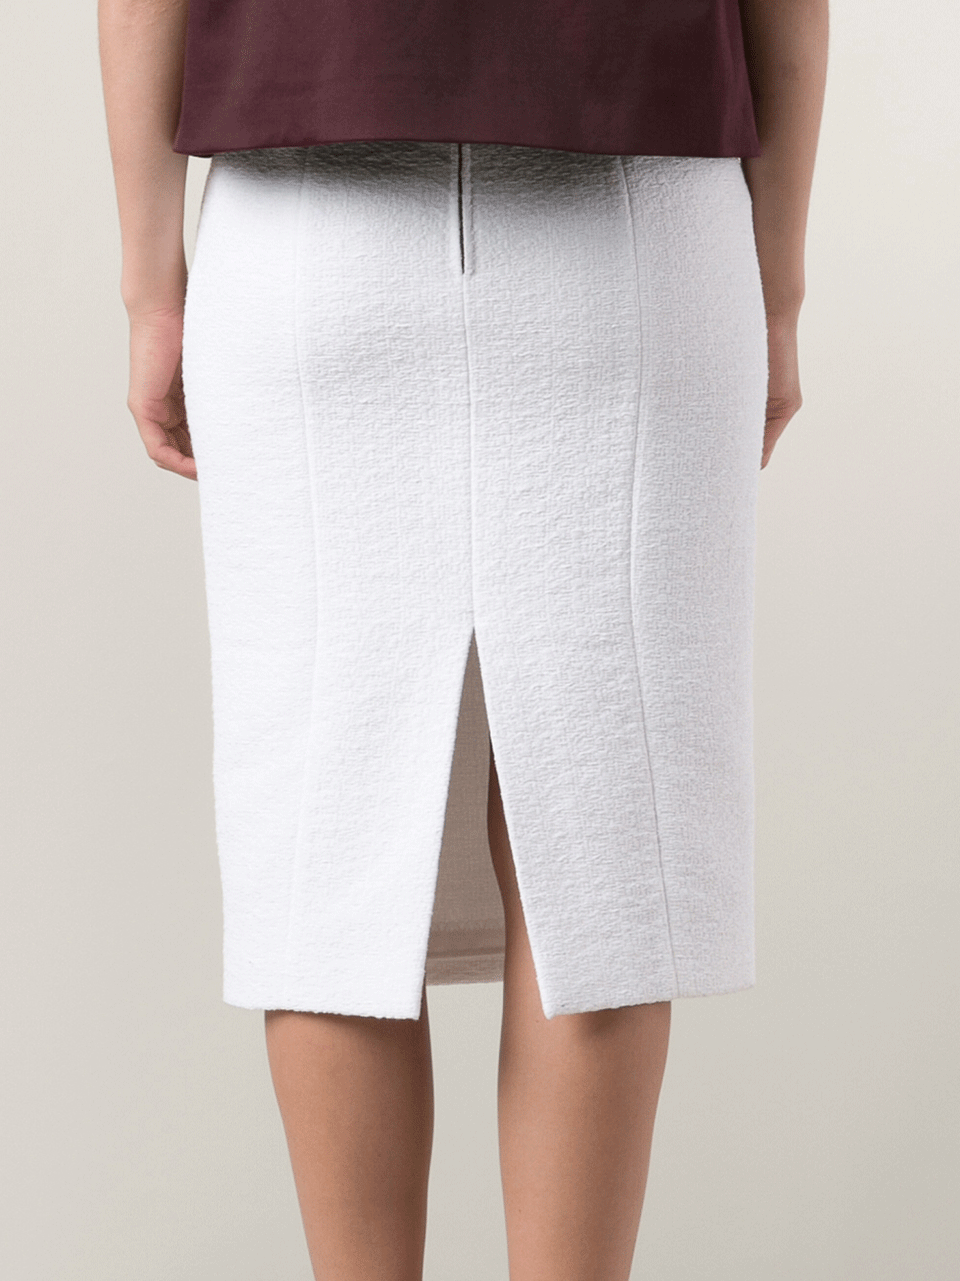 L'WREN SCOTT-Summer Tweed Pencil Skirt-